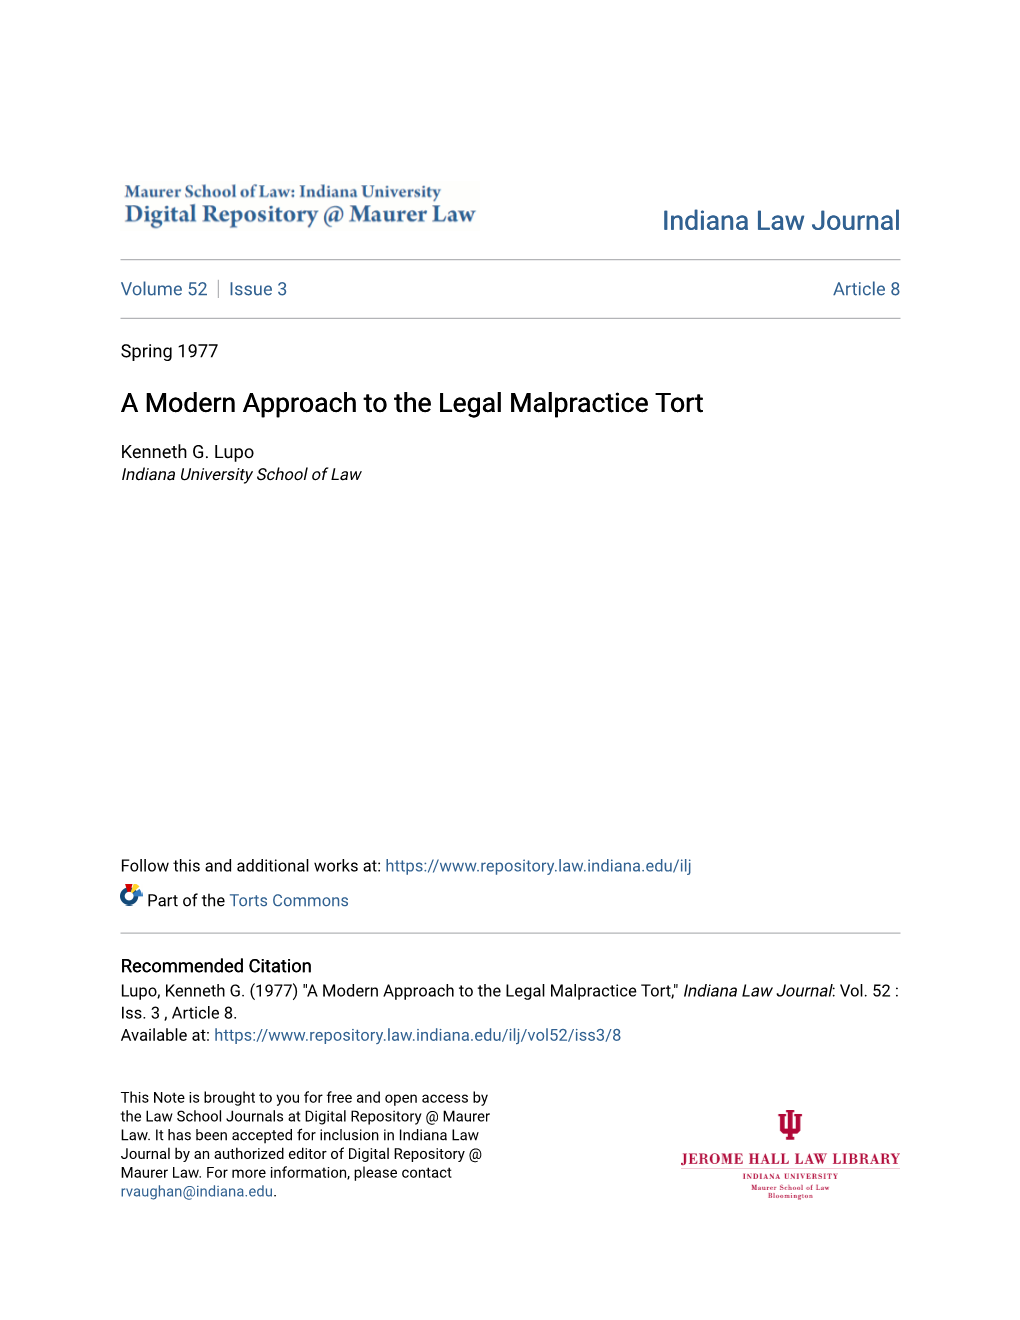 A Modern Approach to the Legal Malpractice Tort